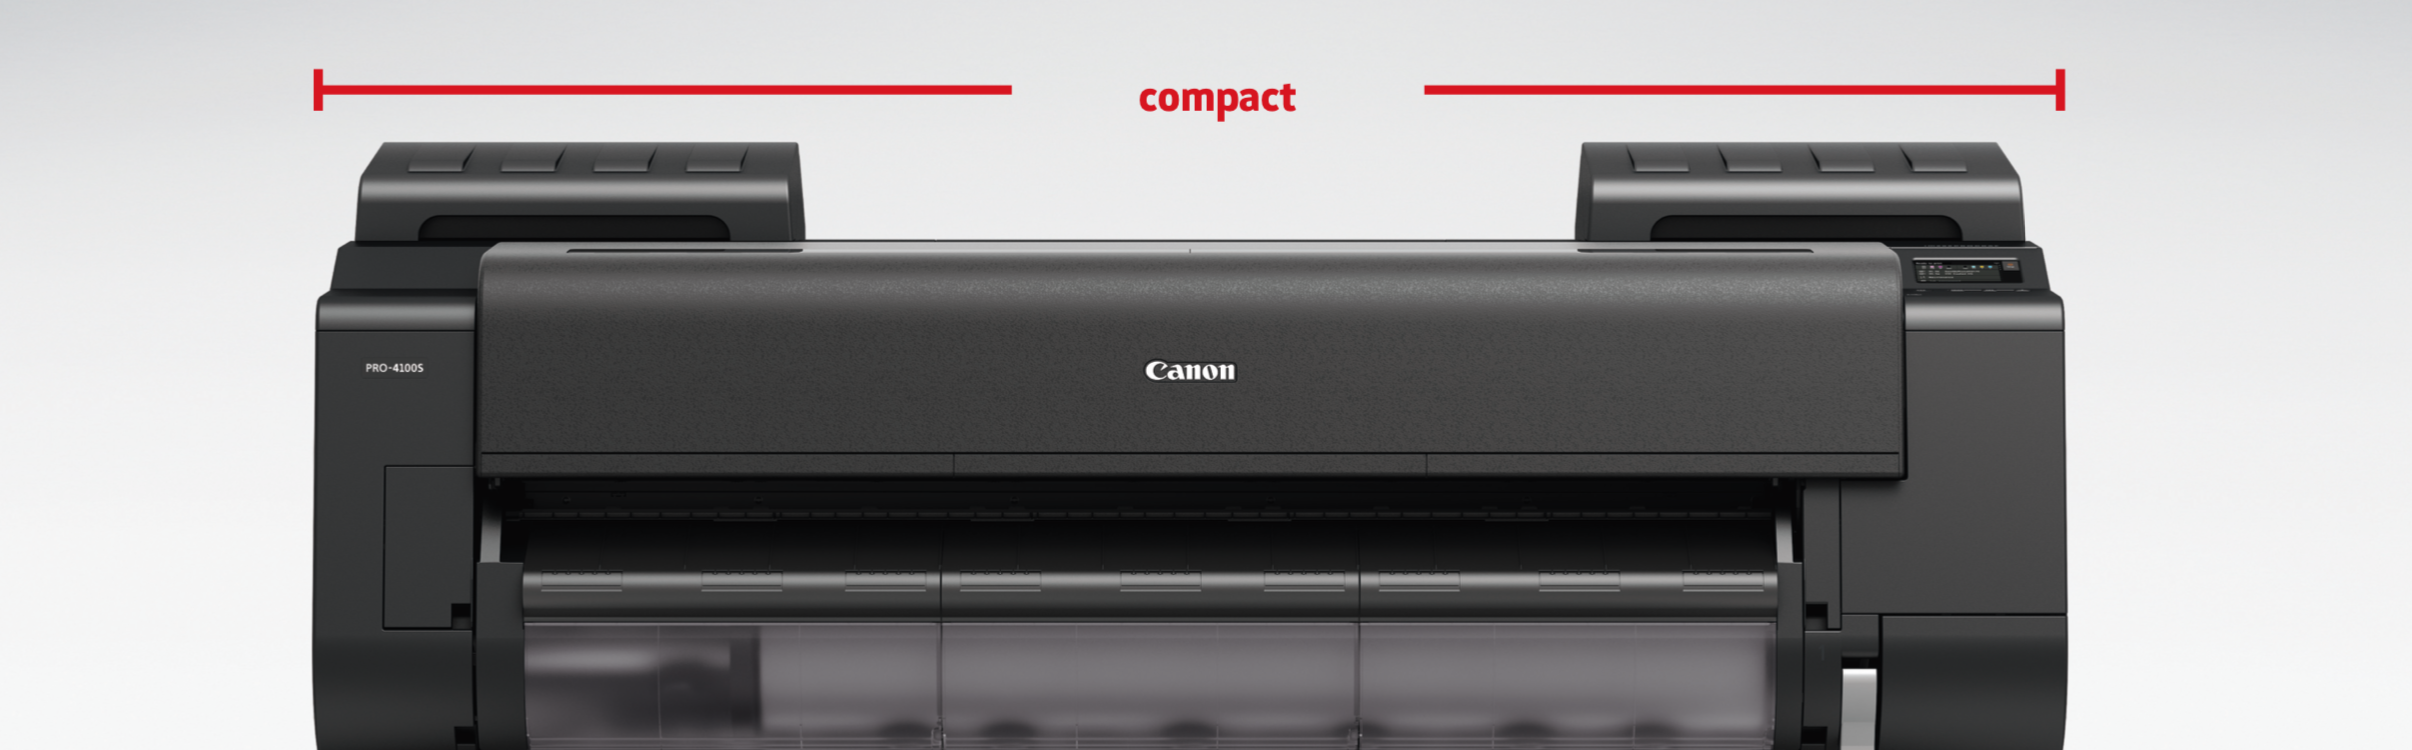 CANON PRO-6100S COMPACT DESIGN